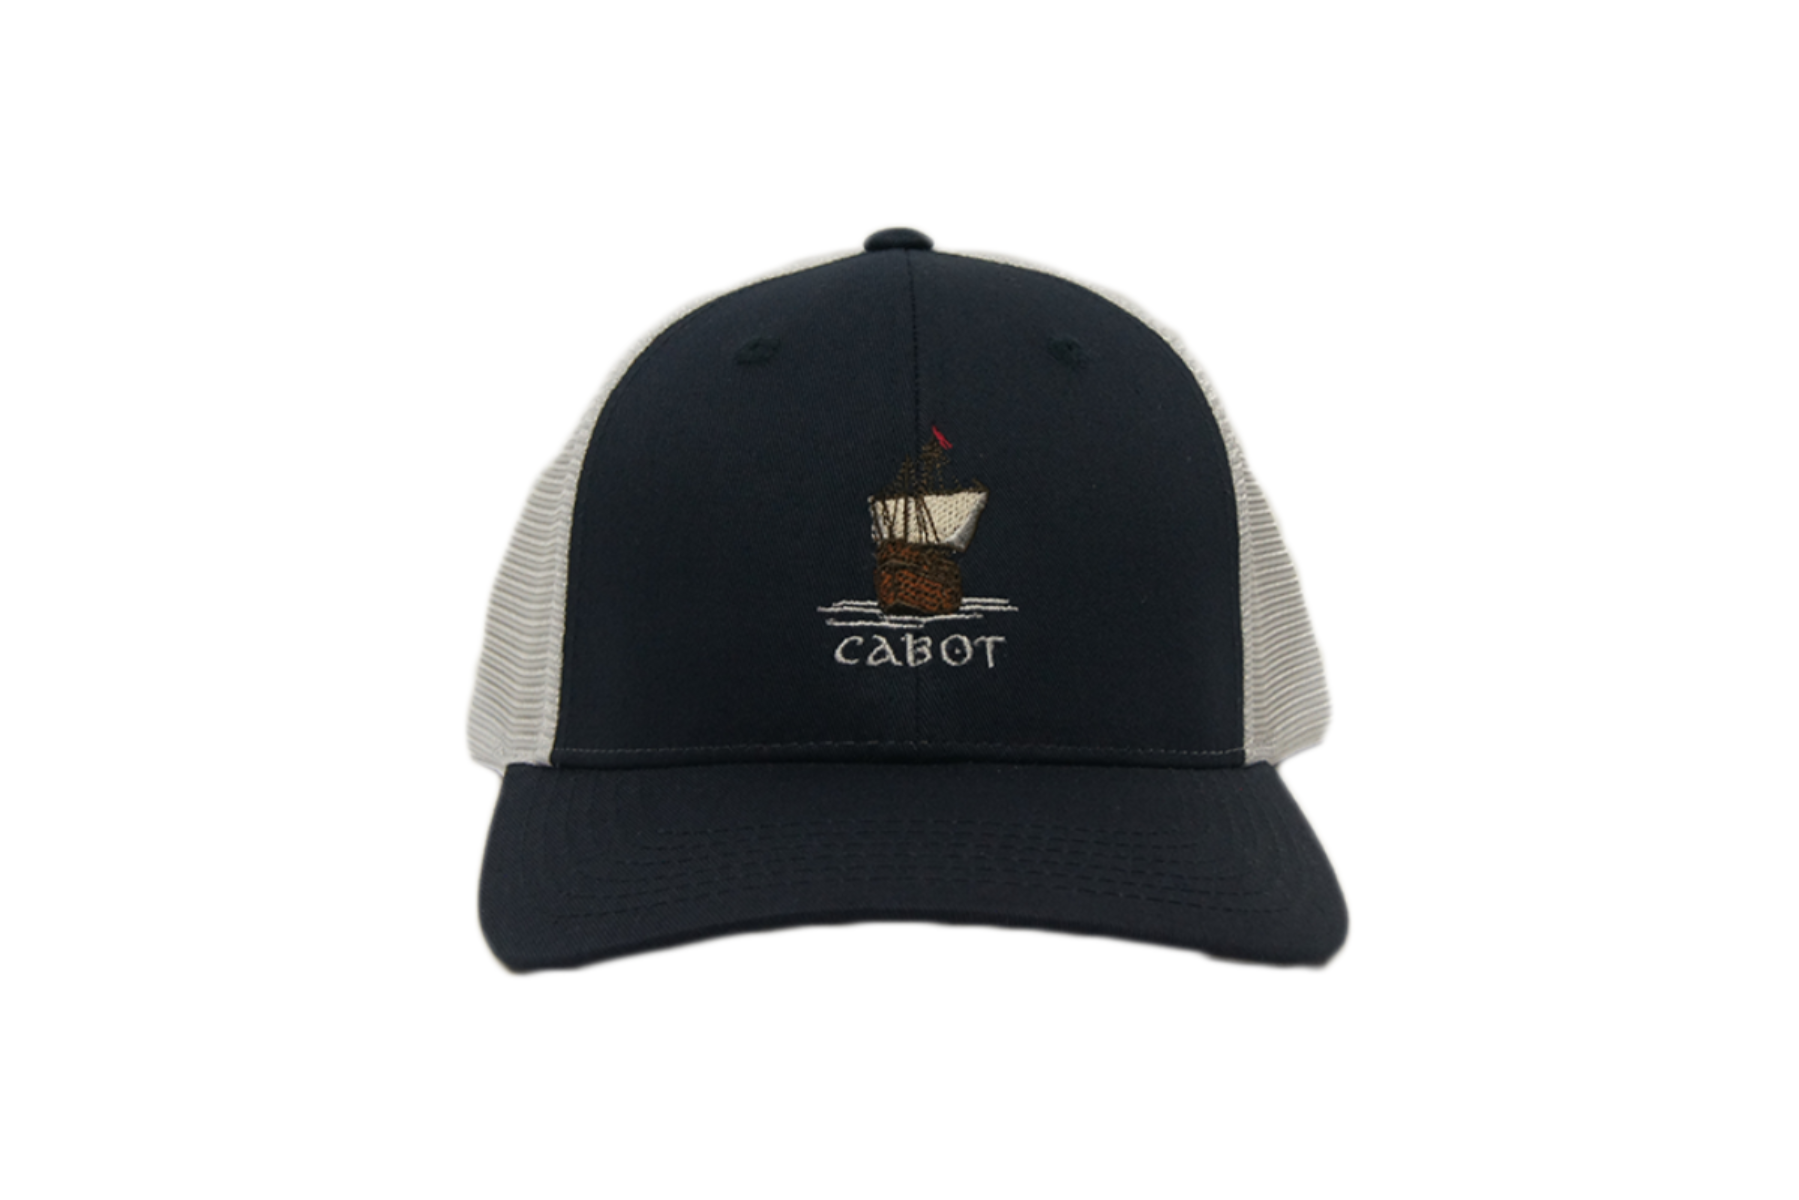 Imperial Cabot Links Vintage Mesh Hat